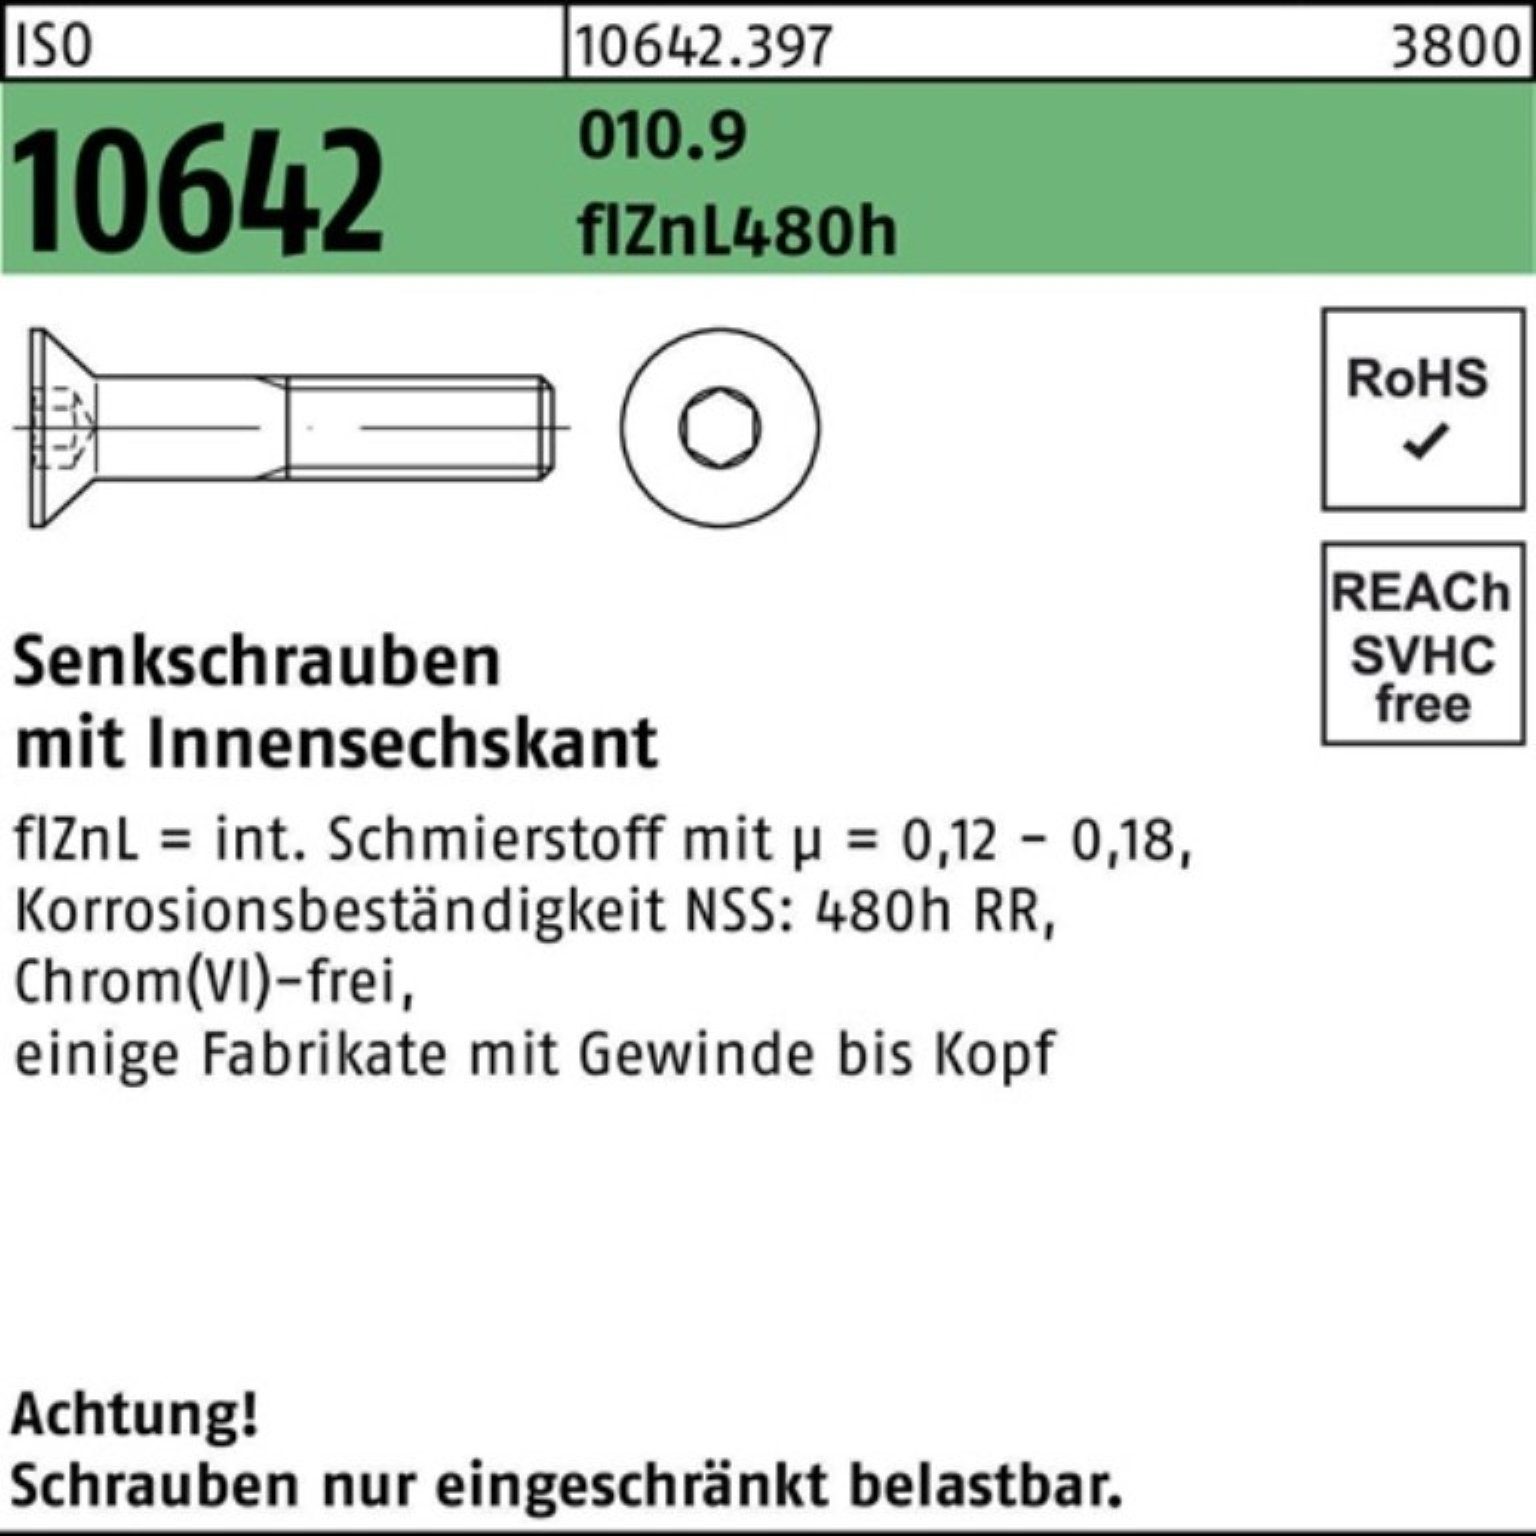 Reyher Senkschraube 100er Pack Senkschraube ISO 10642 Innen-6kt M10x50 010.9 flZnL 480h zi